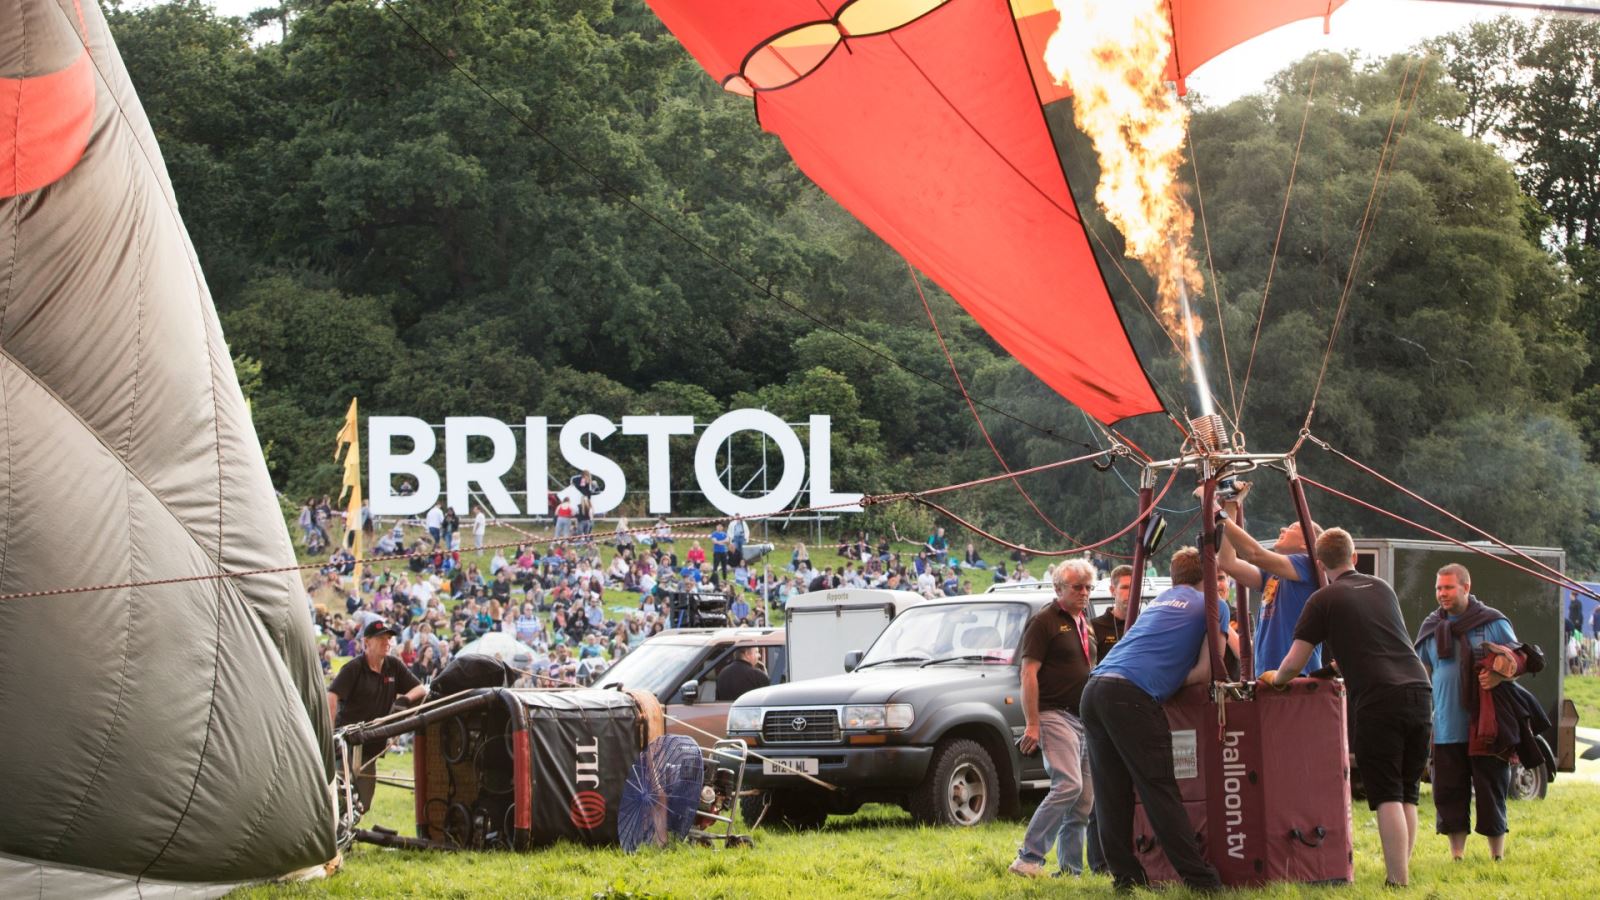 Firing up a hot air balloon at Bristol Balloon Fiesta